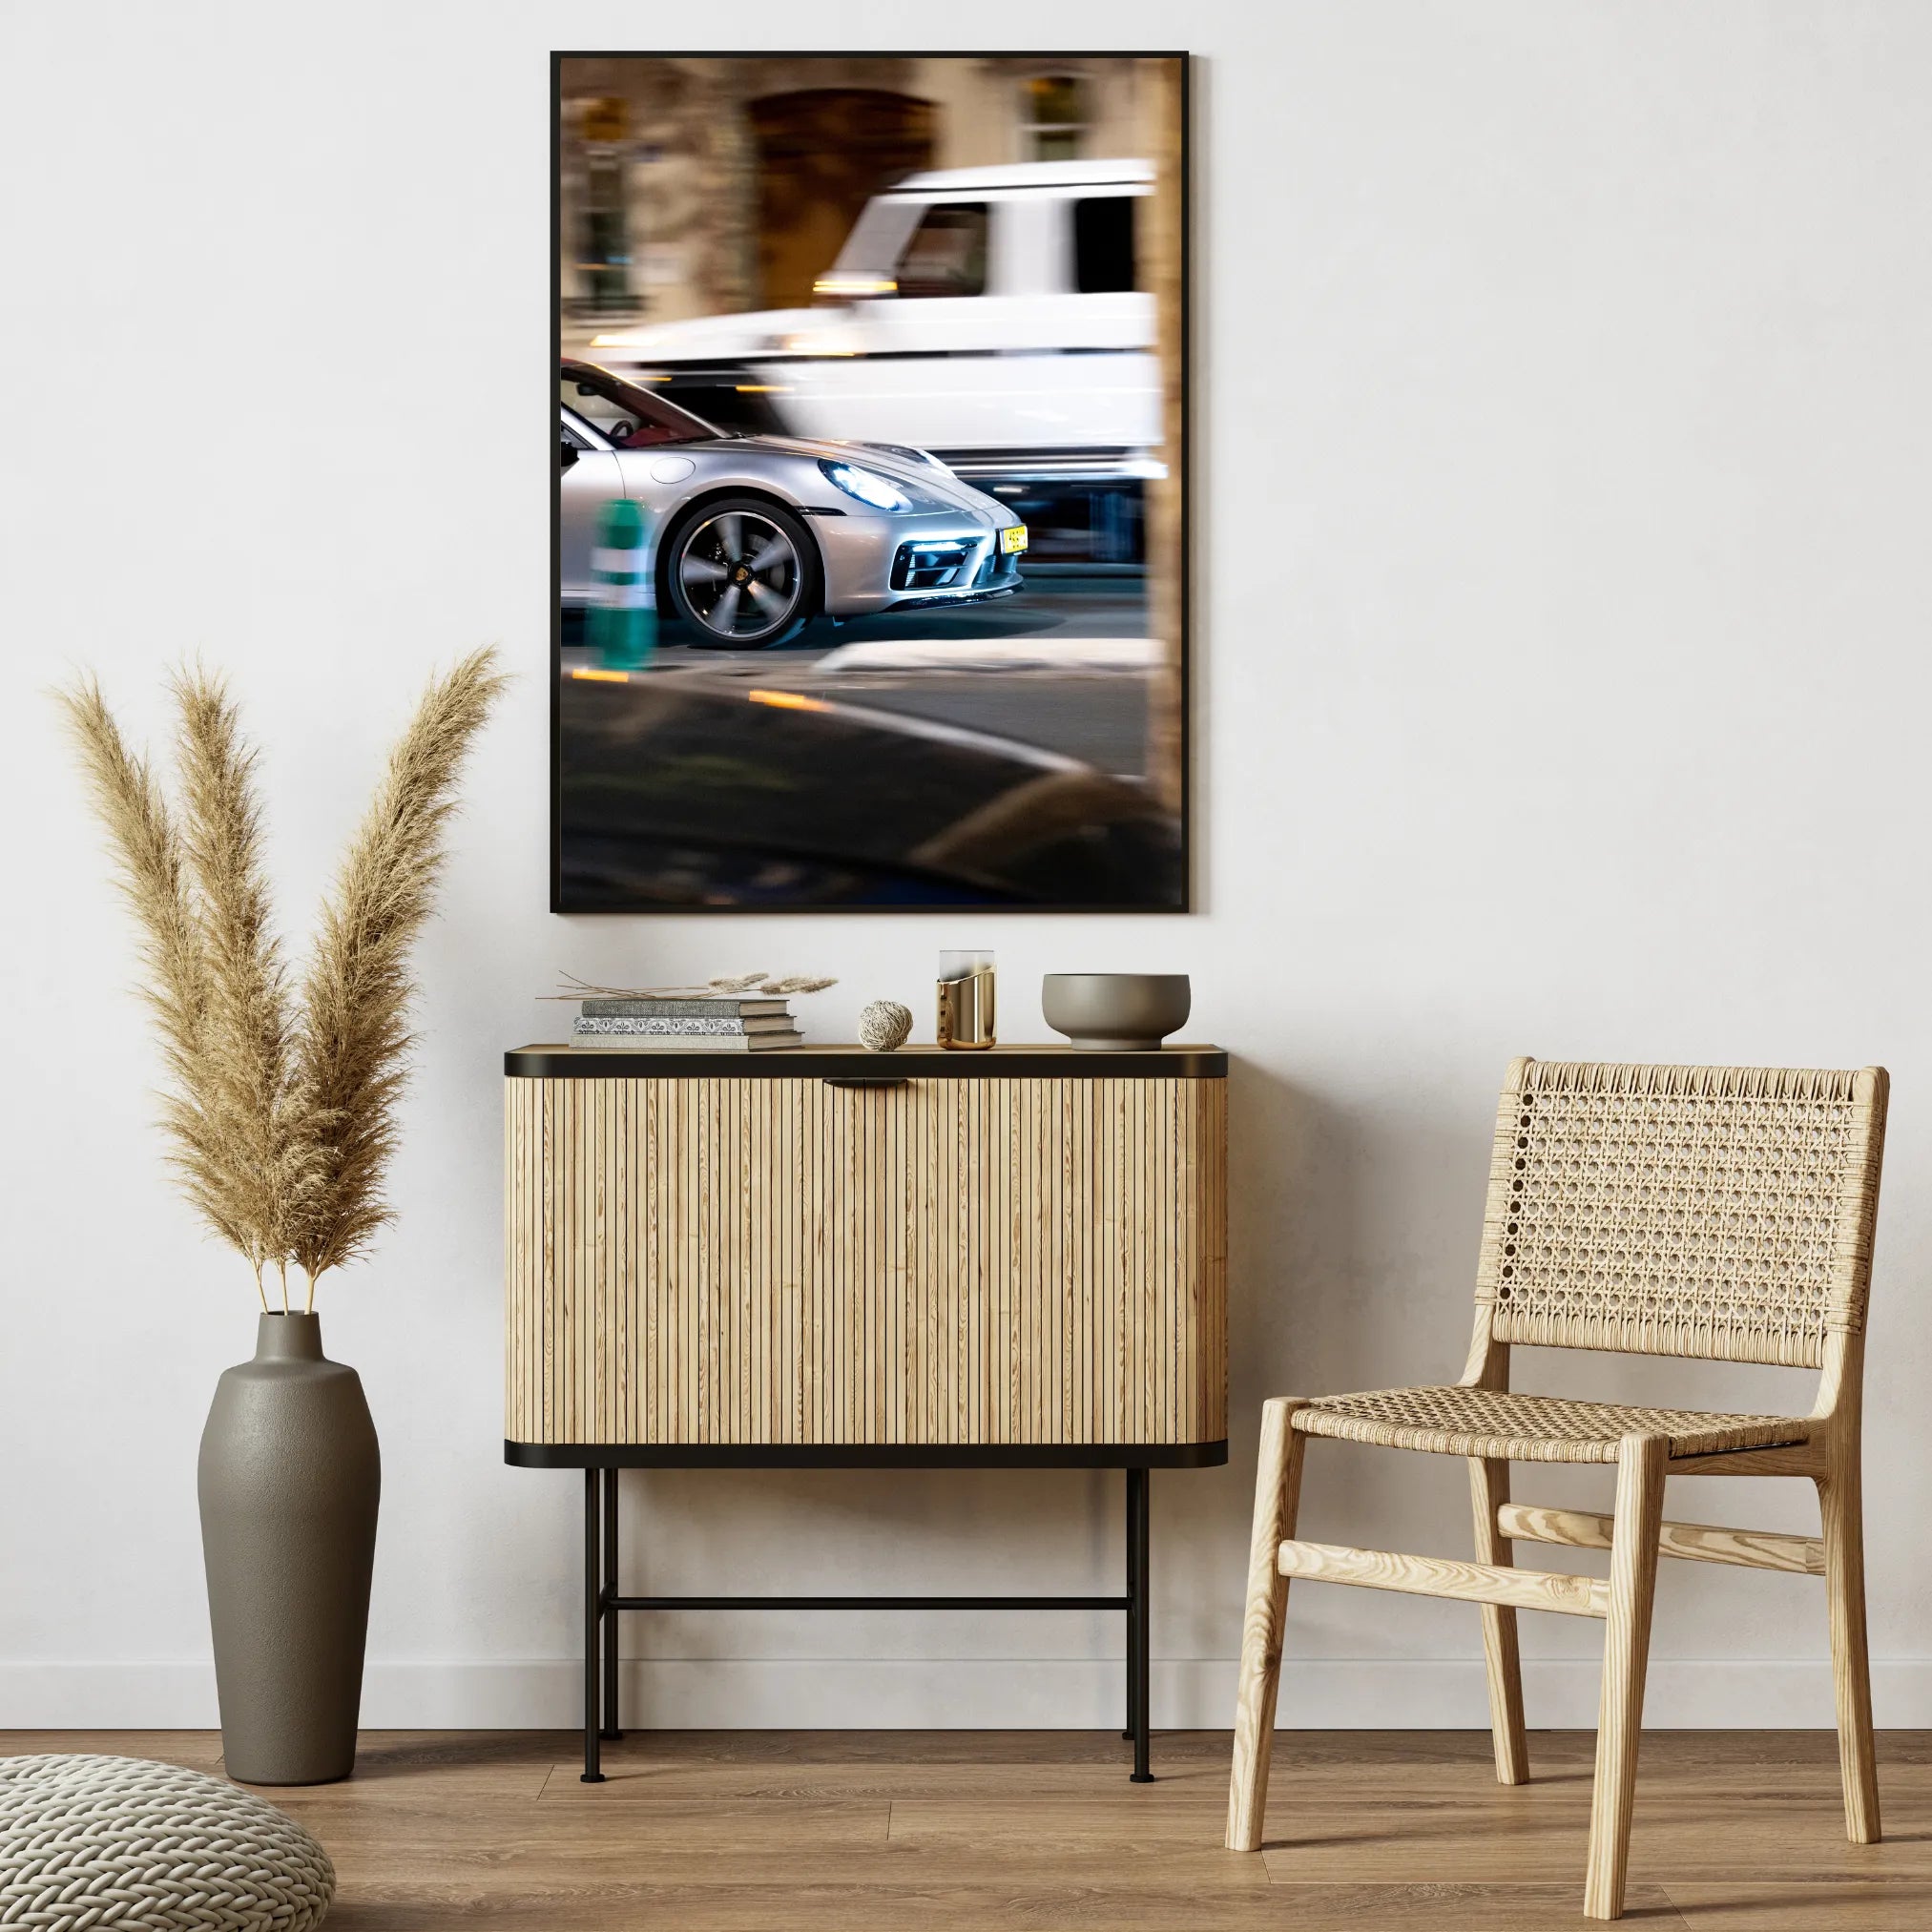 Décoration Murale Porsche - Ajoutez une touche de style et de passion à votre intérieur